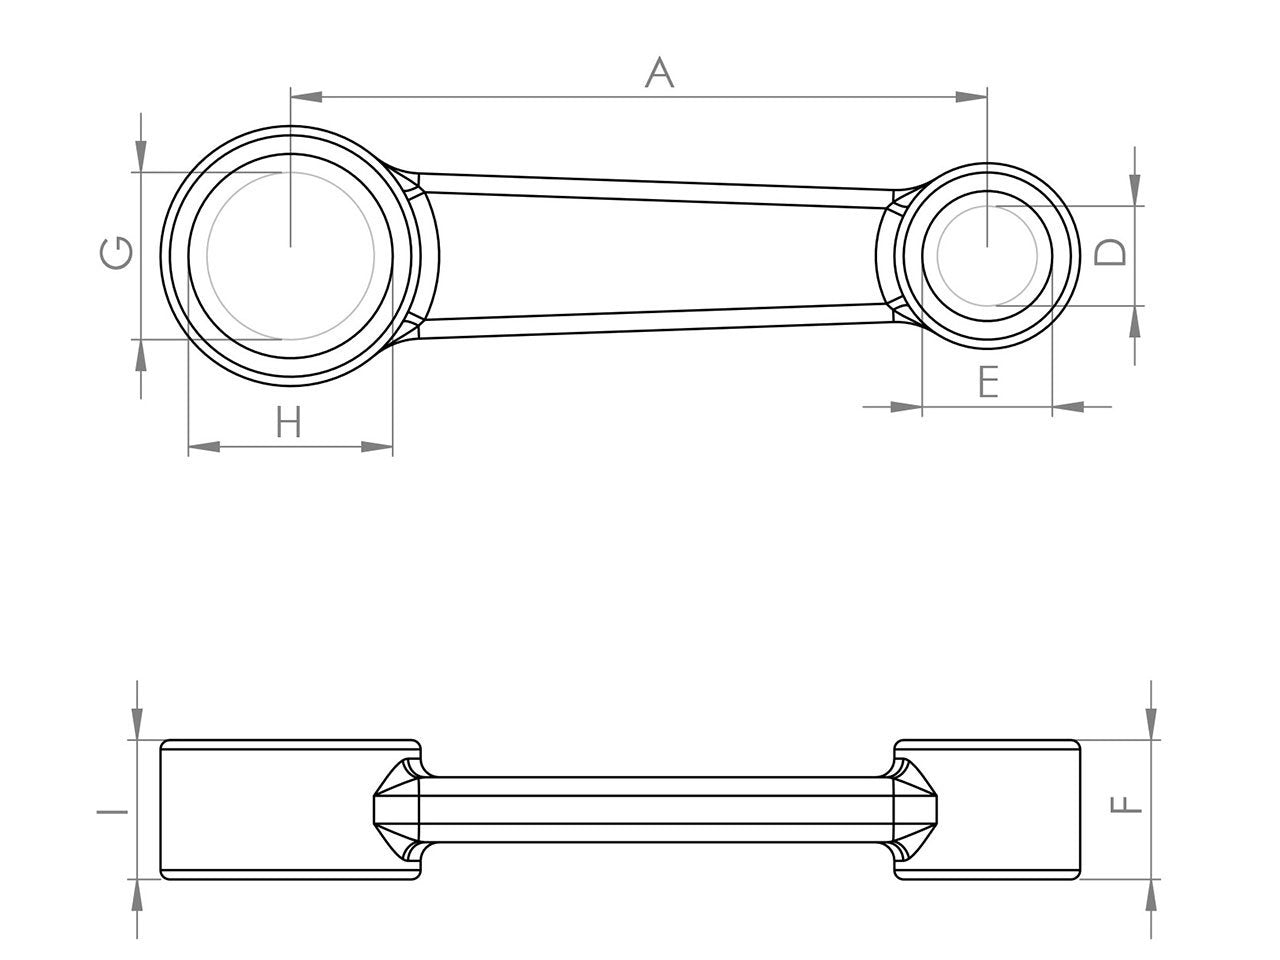 Zeichnung Barikit Pleuel für einen Derbi FDS Motor mit Bemaßung.